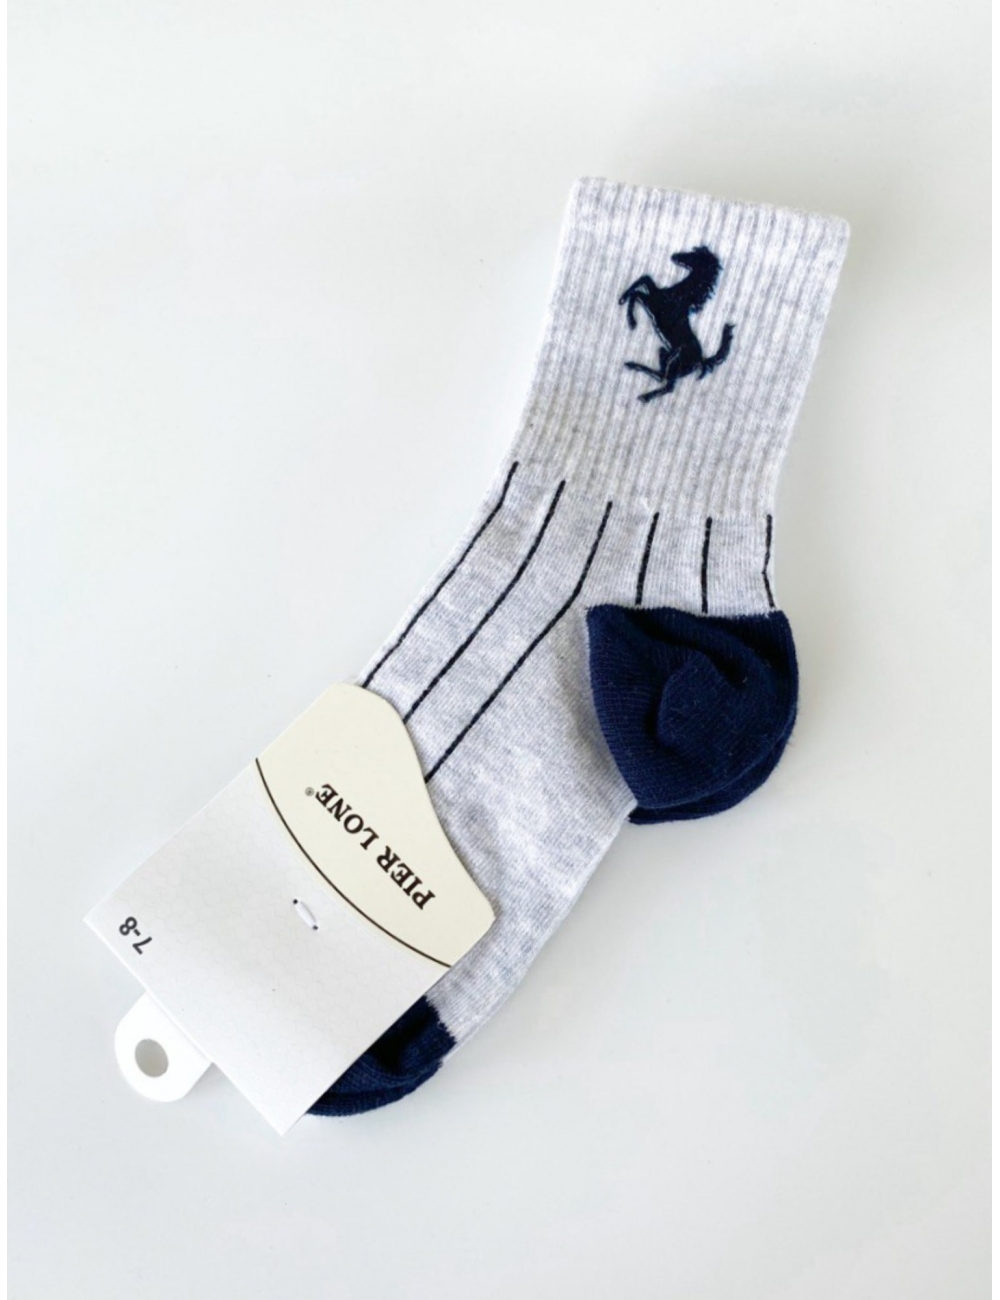 Шкарпетки для хлопчиків тм "Pier Lone" Коник cірі